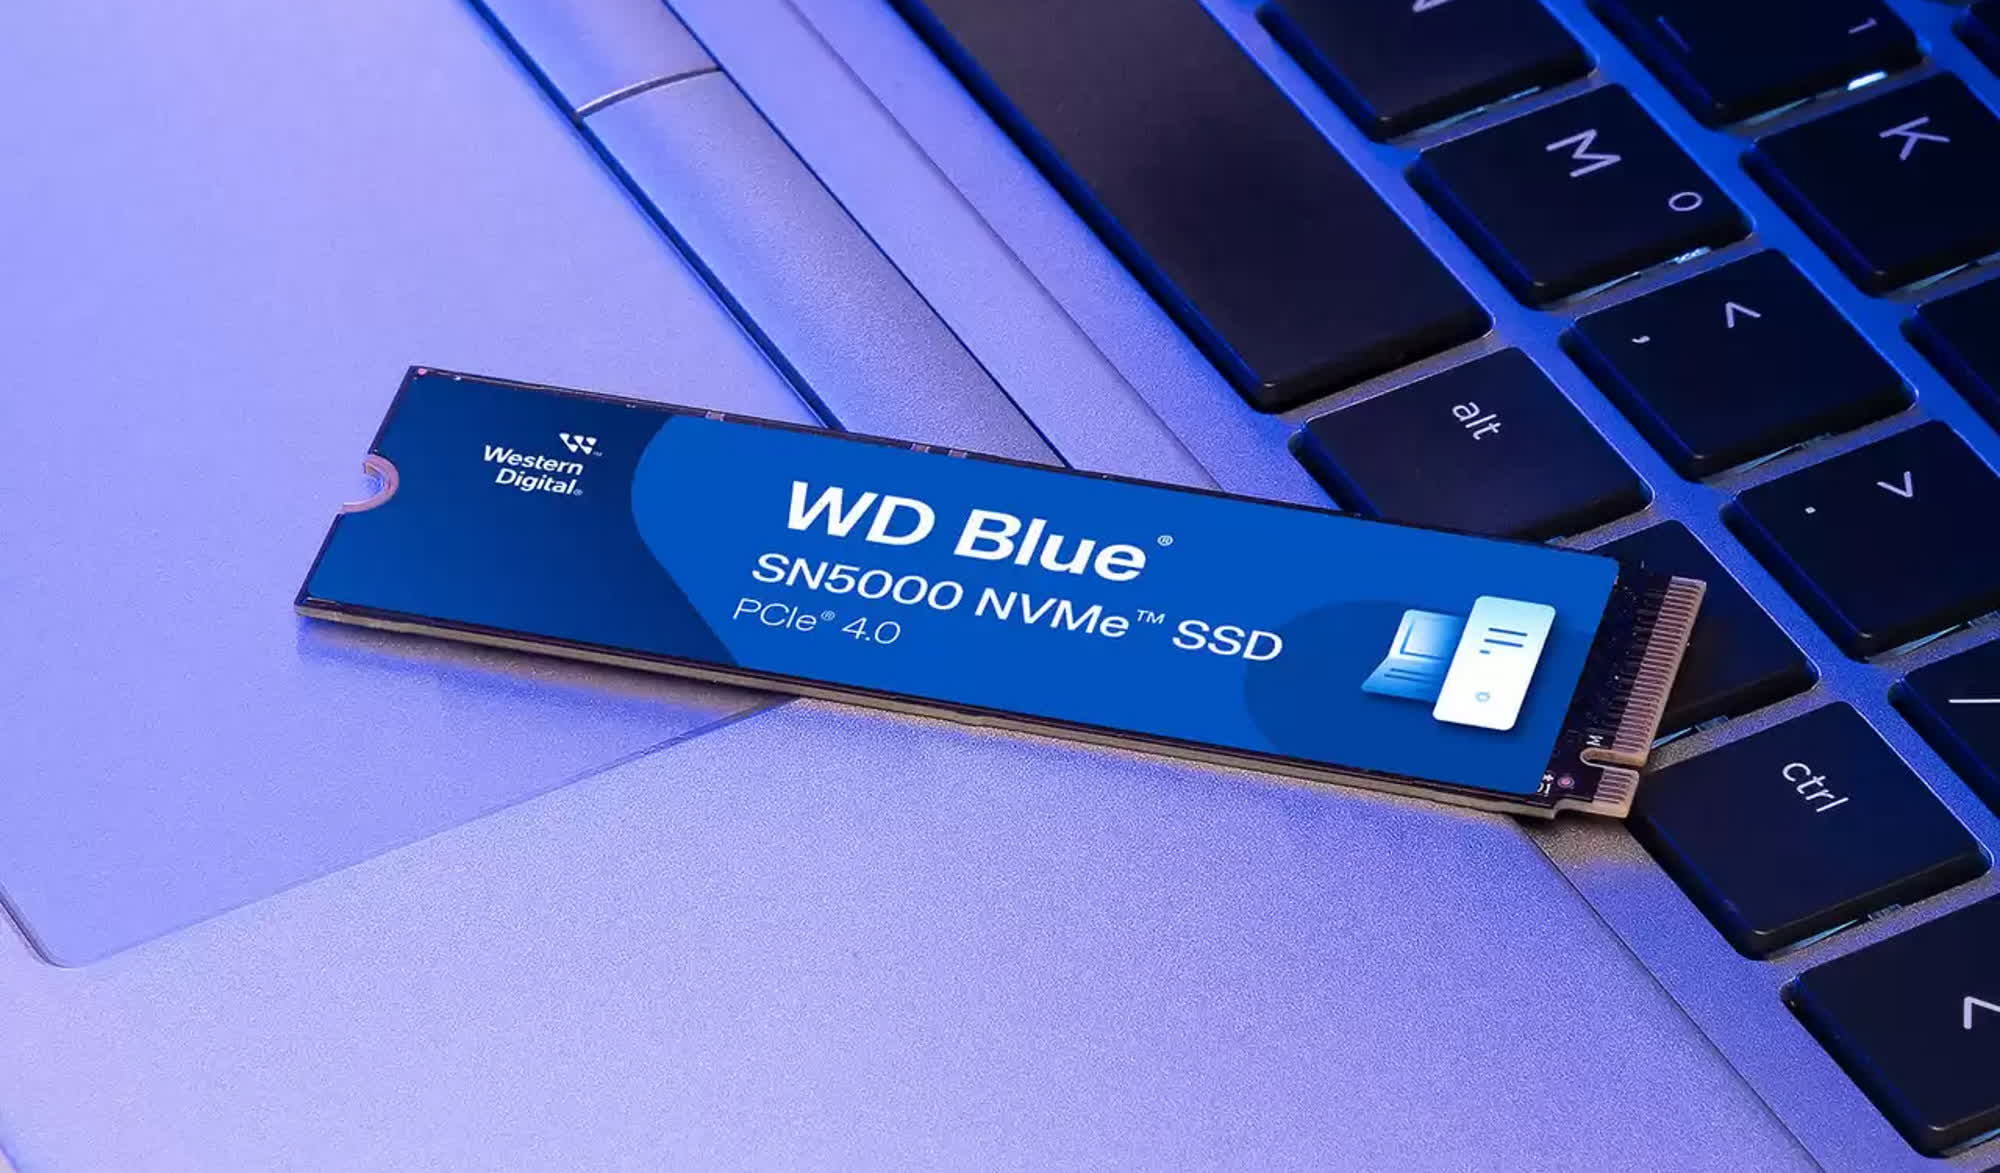 La nueva línea económica de SSD NVMe de Western Digital llega a precios peculiares